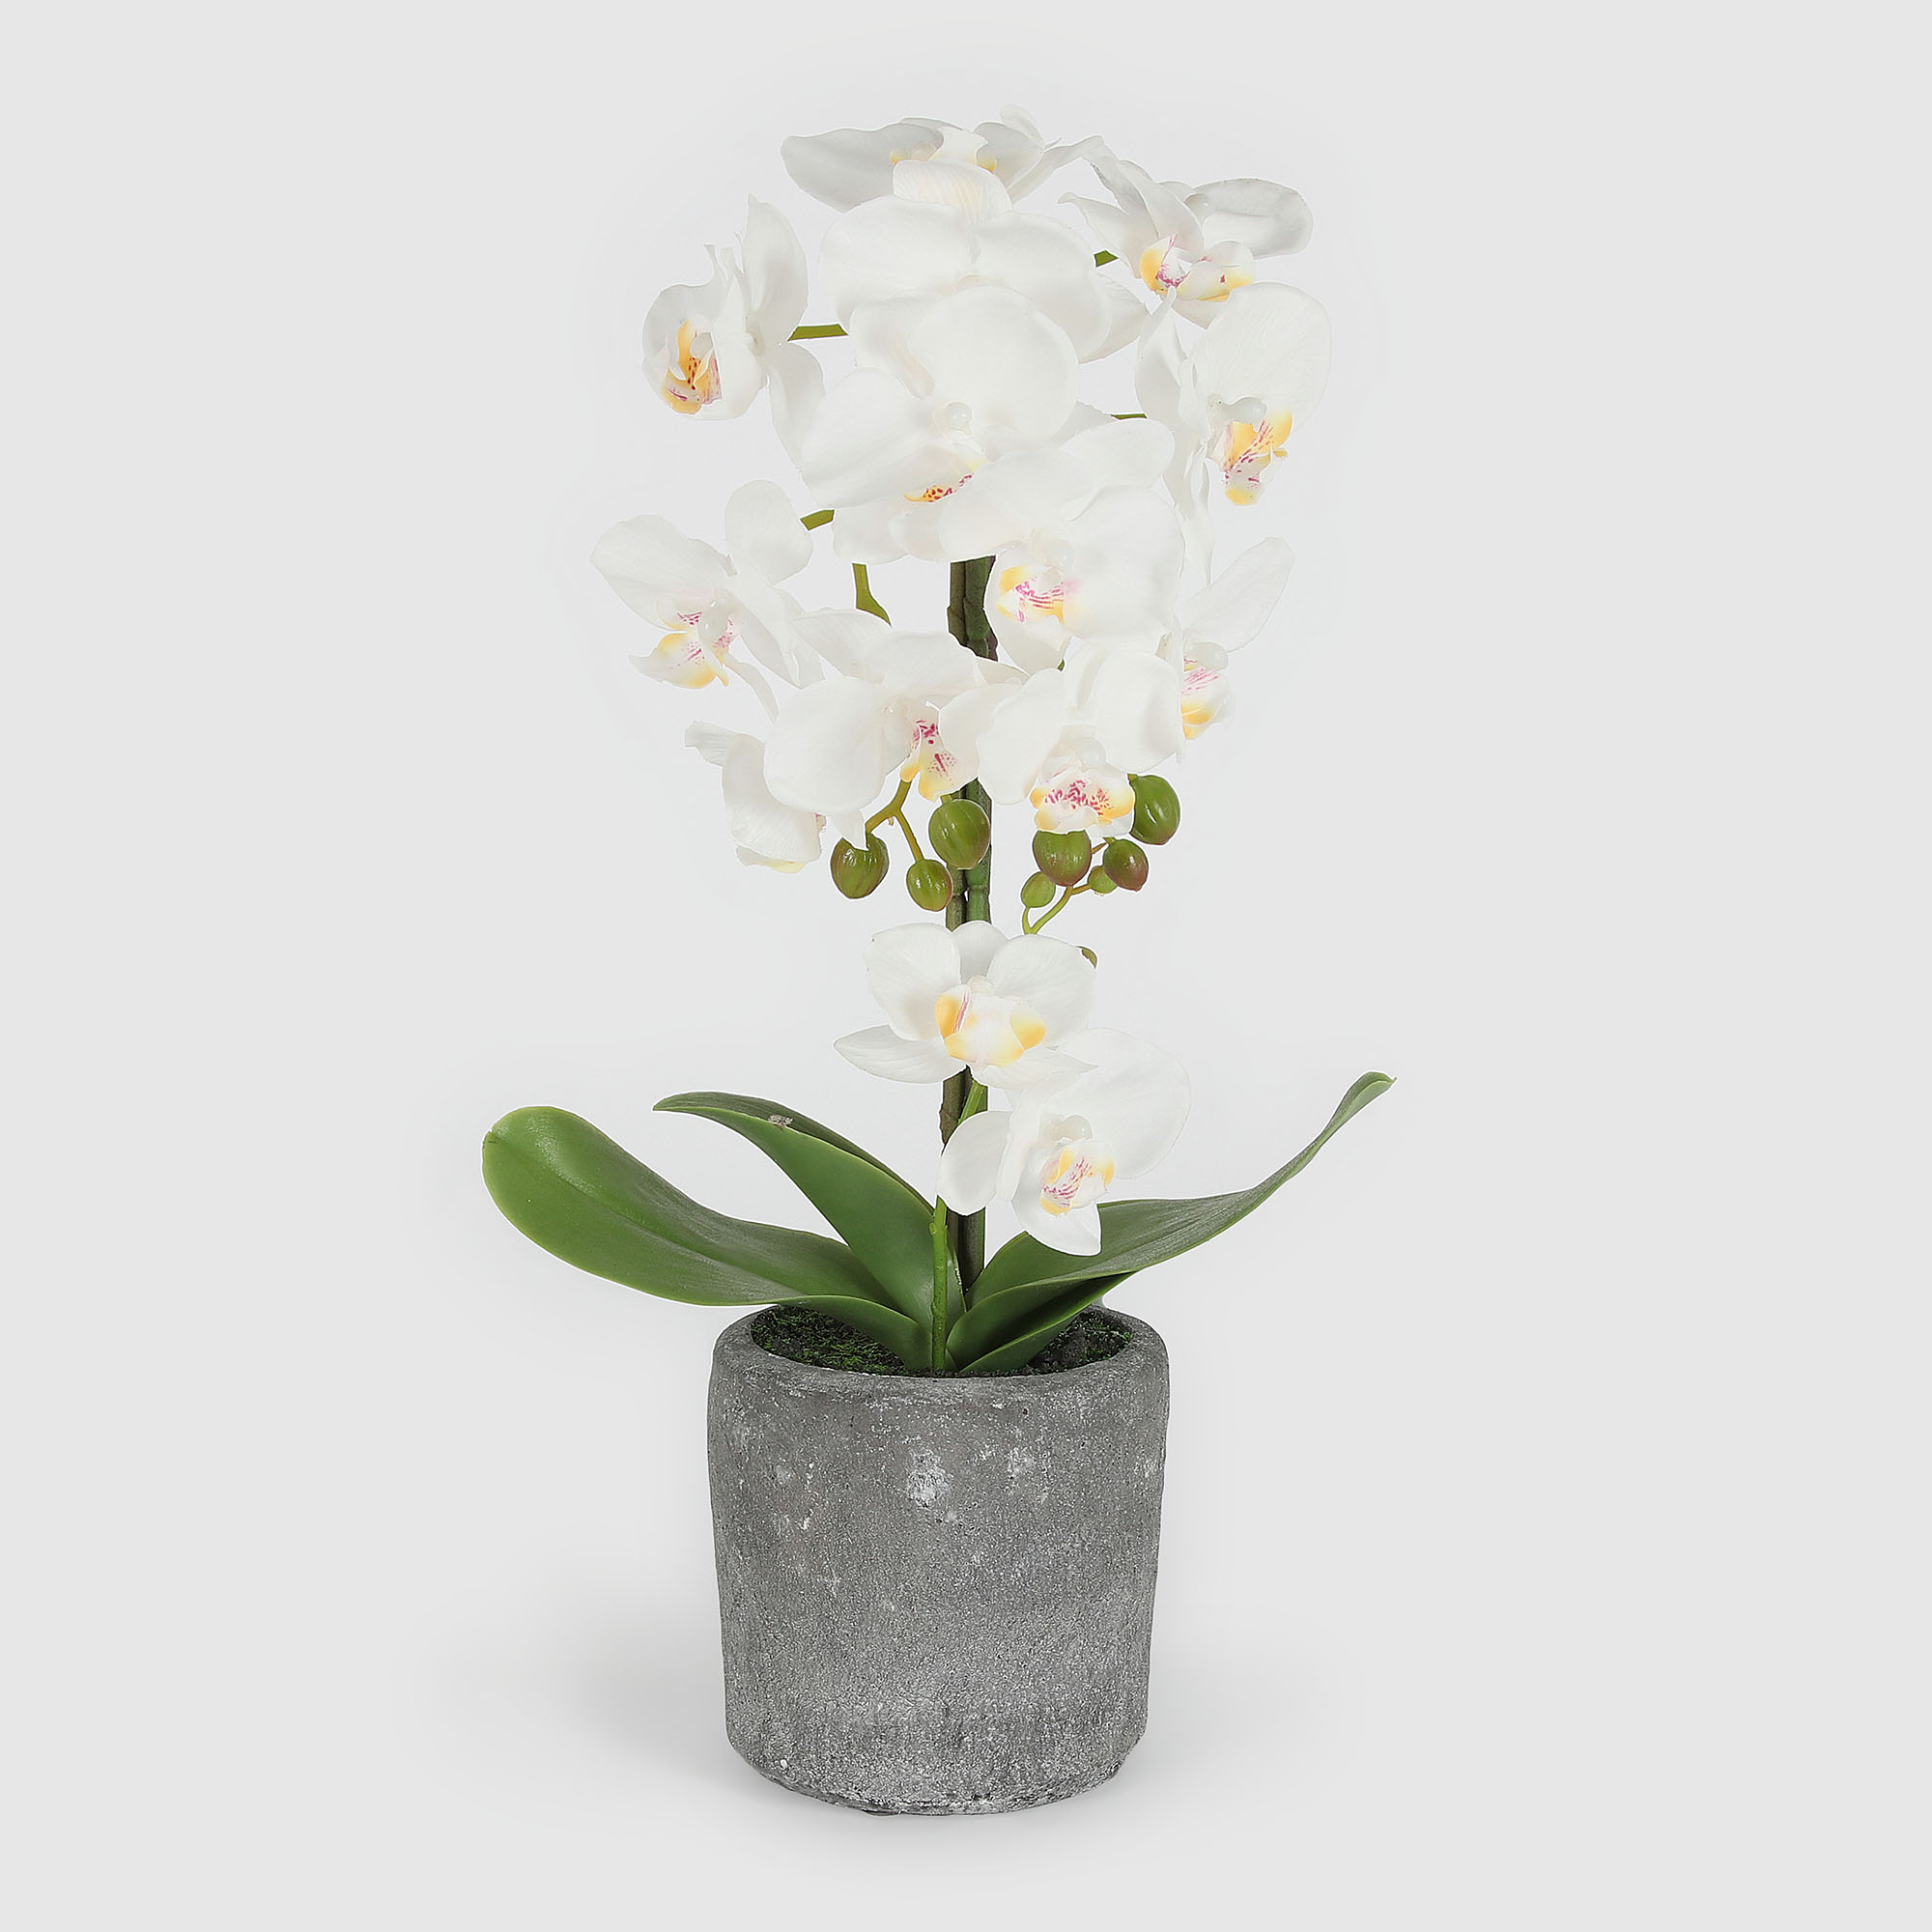 Цветок искусственный Fuzhou Light в горшке орхидея белая 3 цвета, 42 см